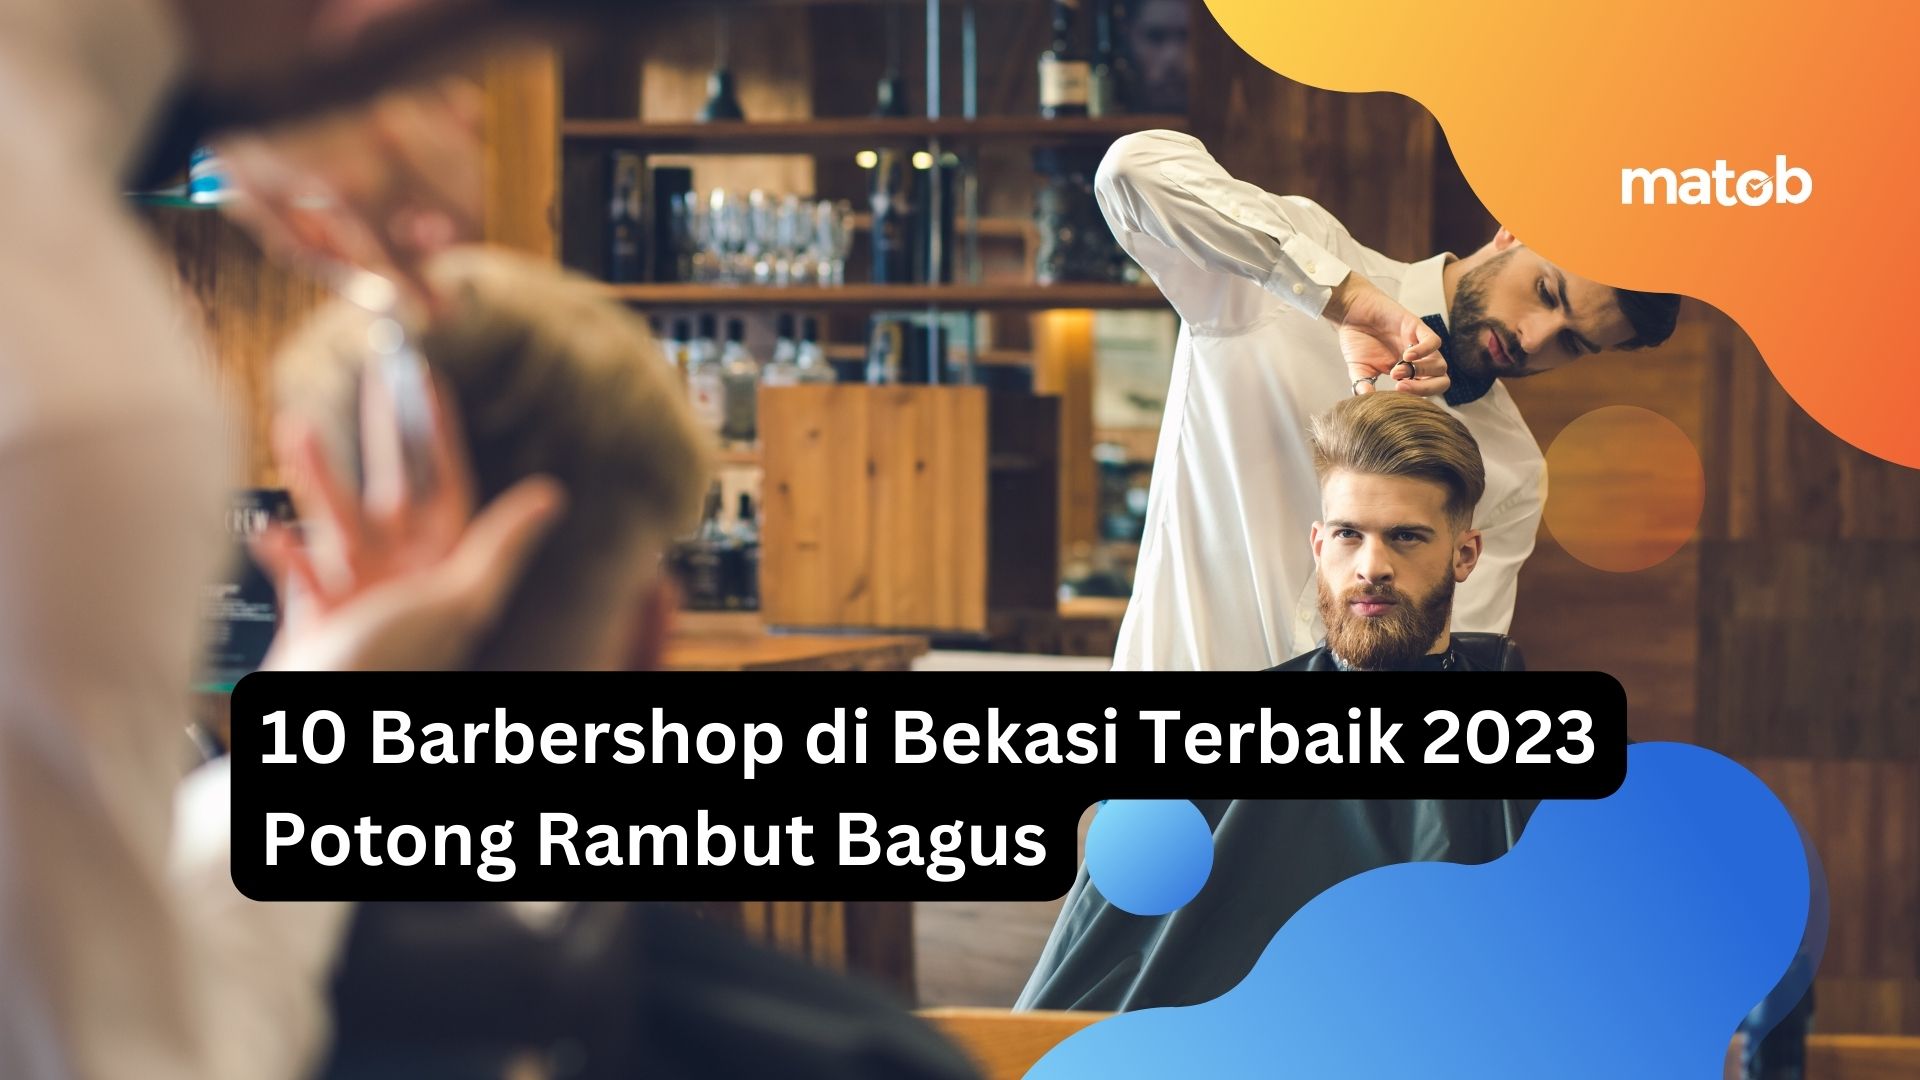 10 Barbershop di Bekasi Terbaik 2023 Potong Rambut Bagus